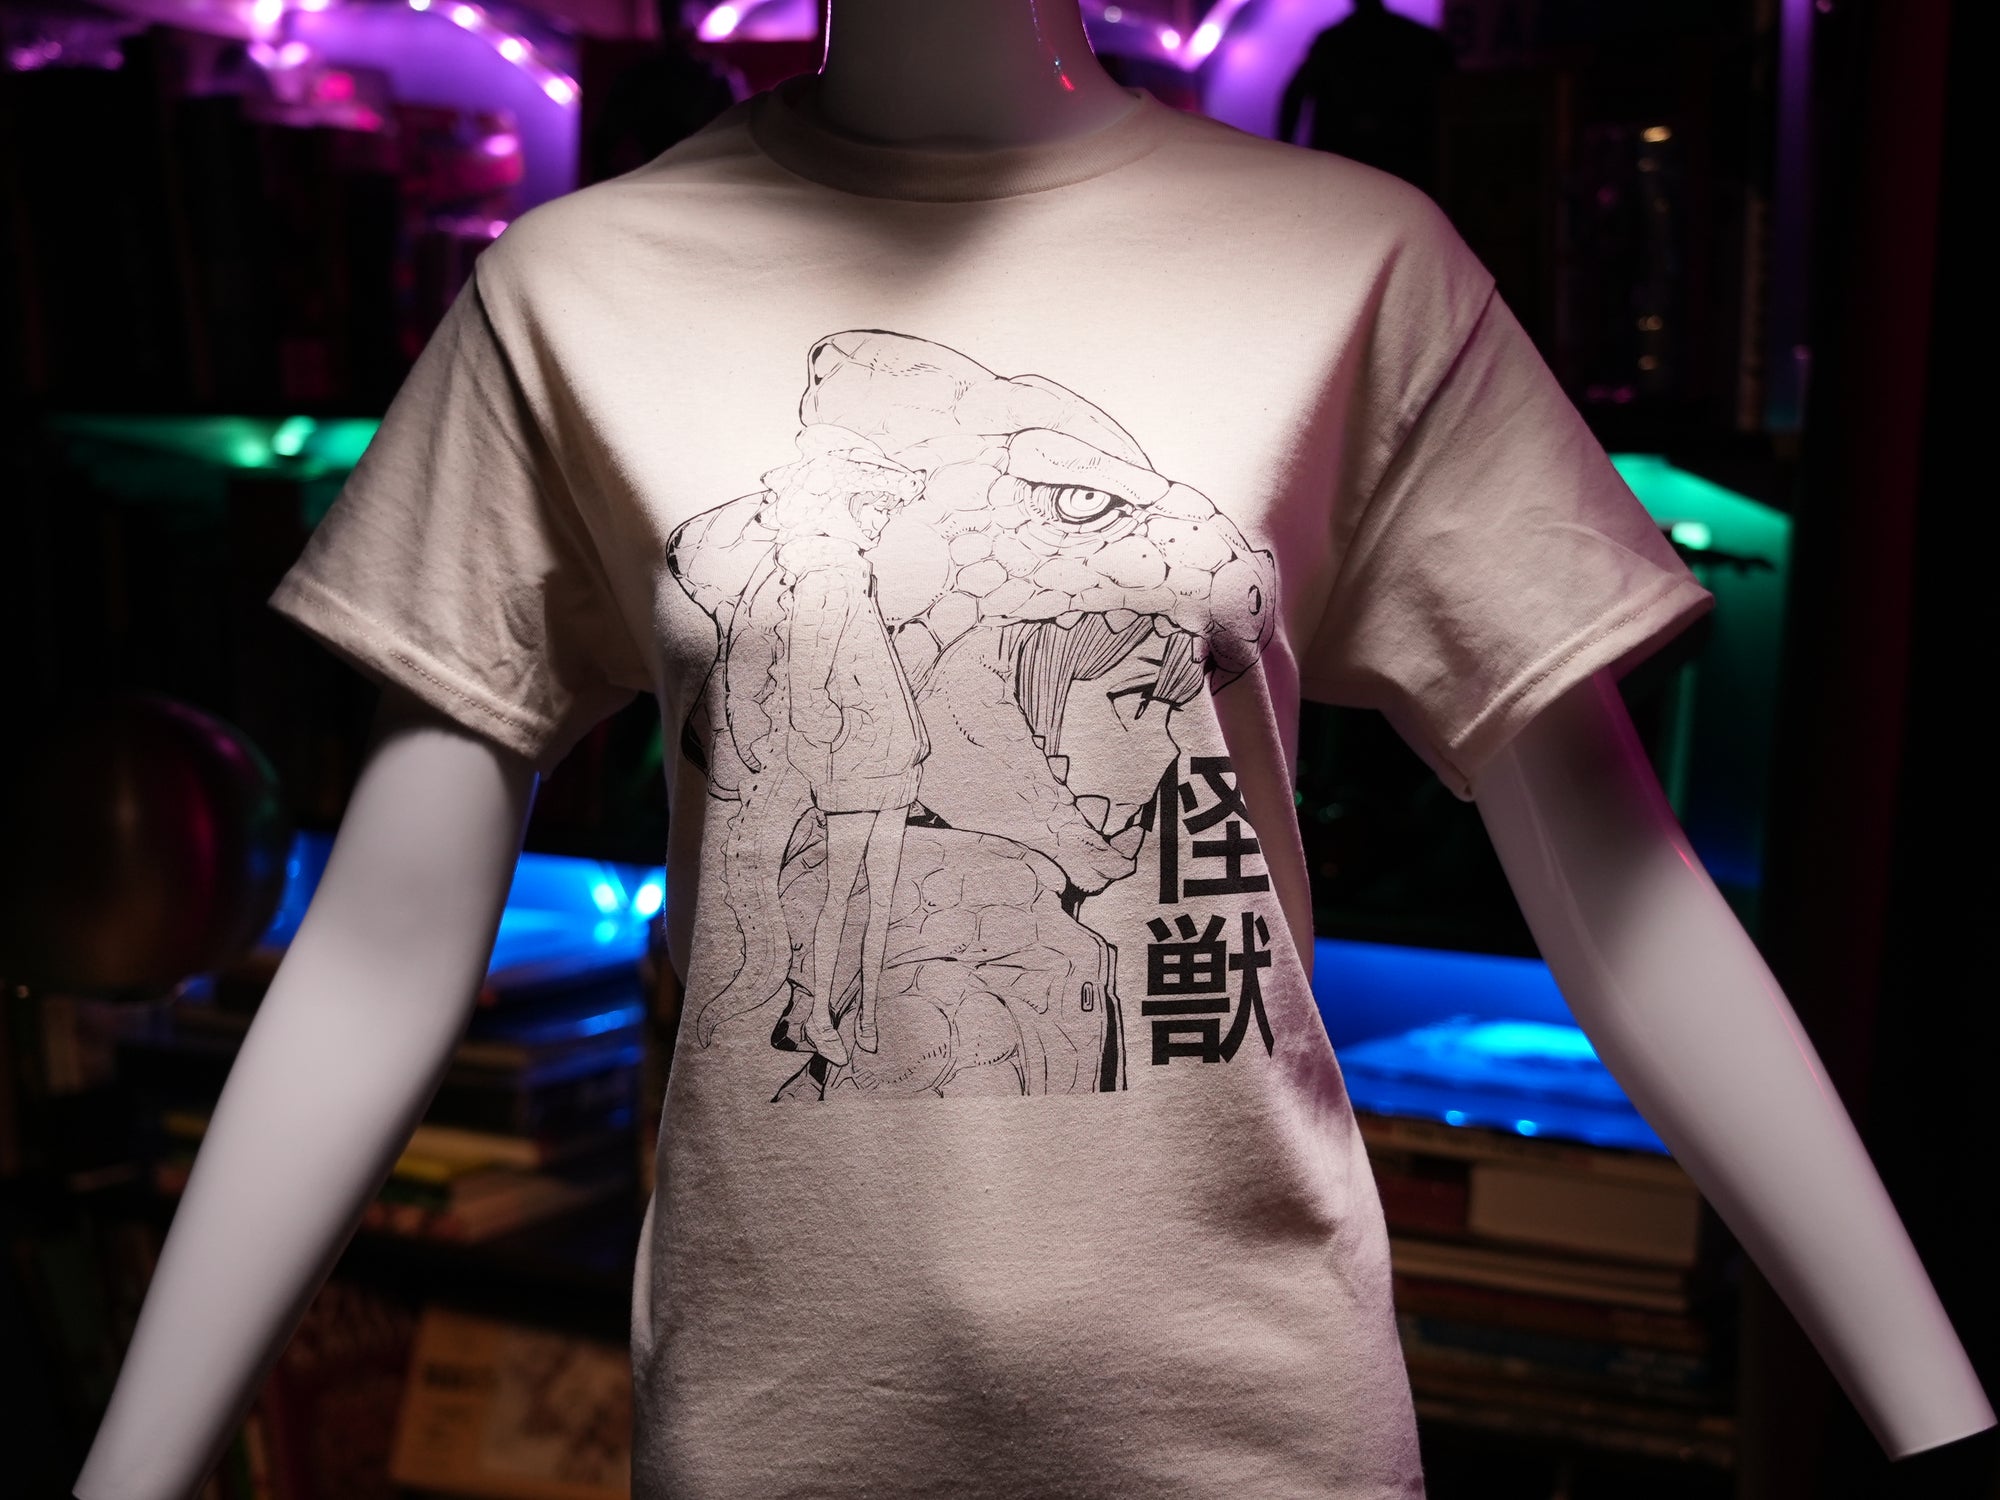 Acky Bright "Kawaii Kaiju" T-Shirt (Color Natural, Unisex)